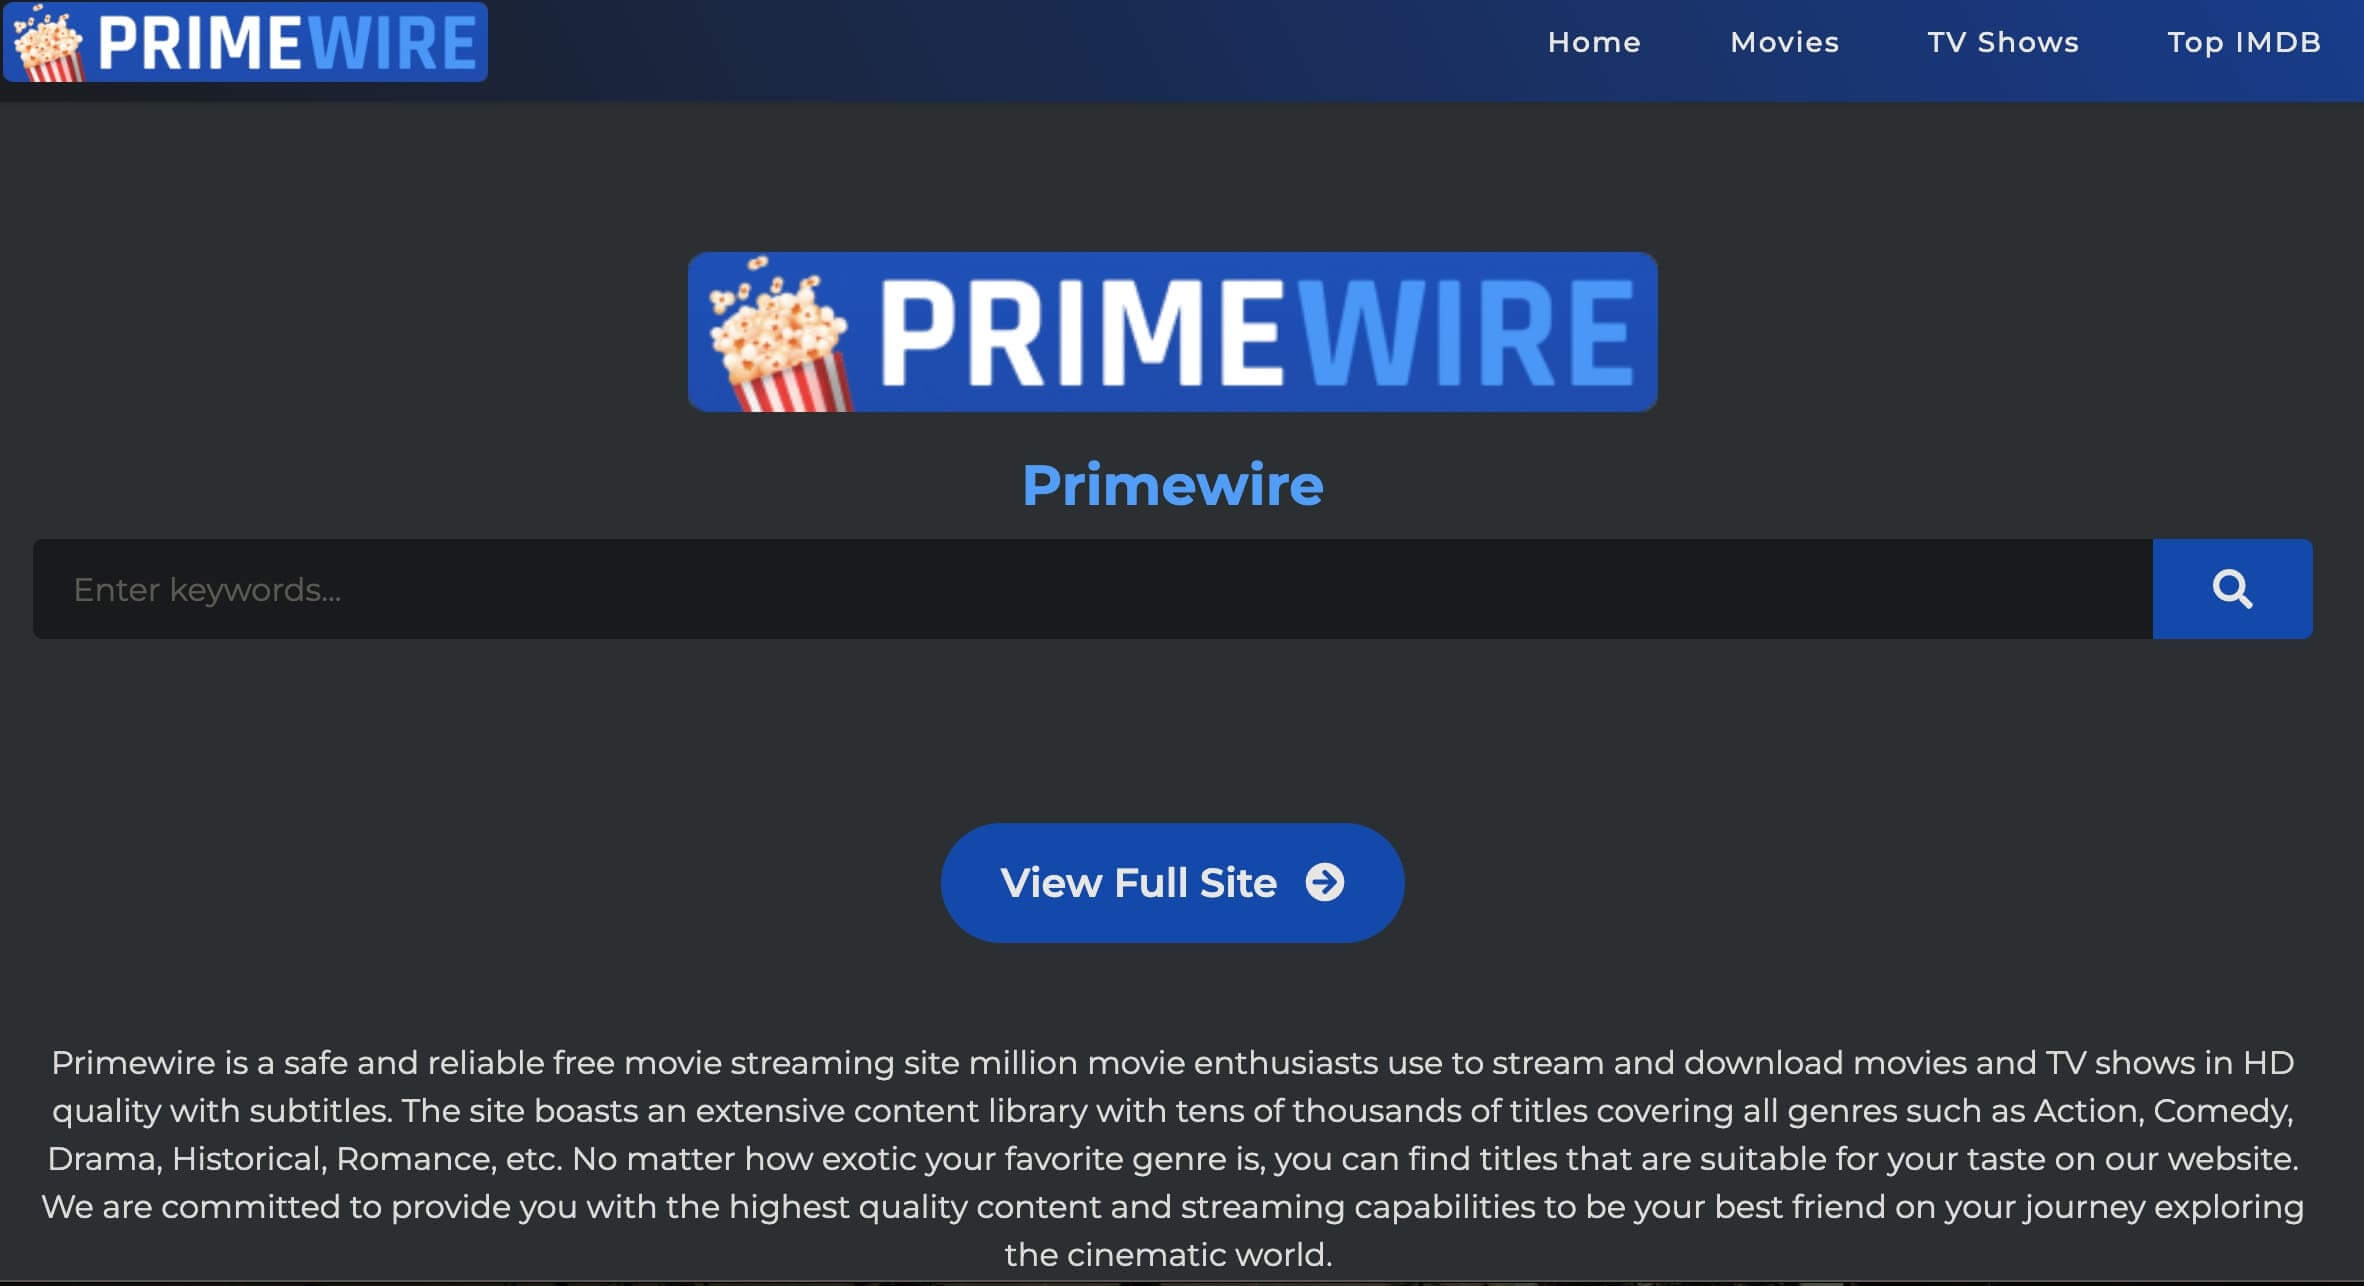 The Primewire